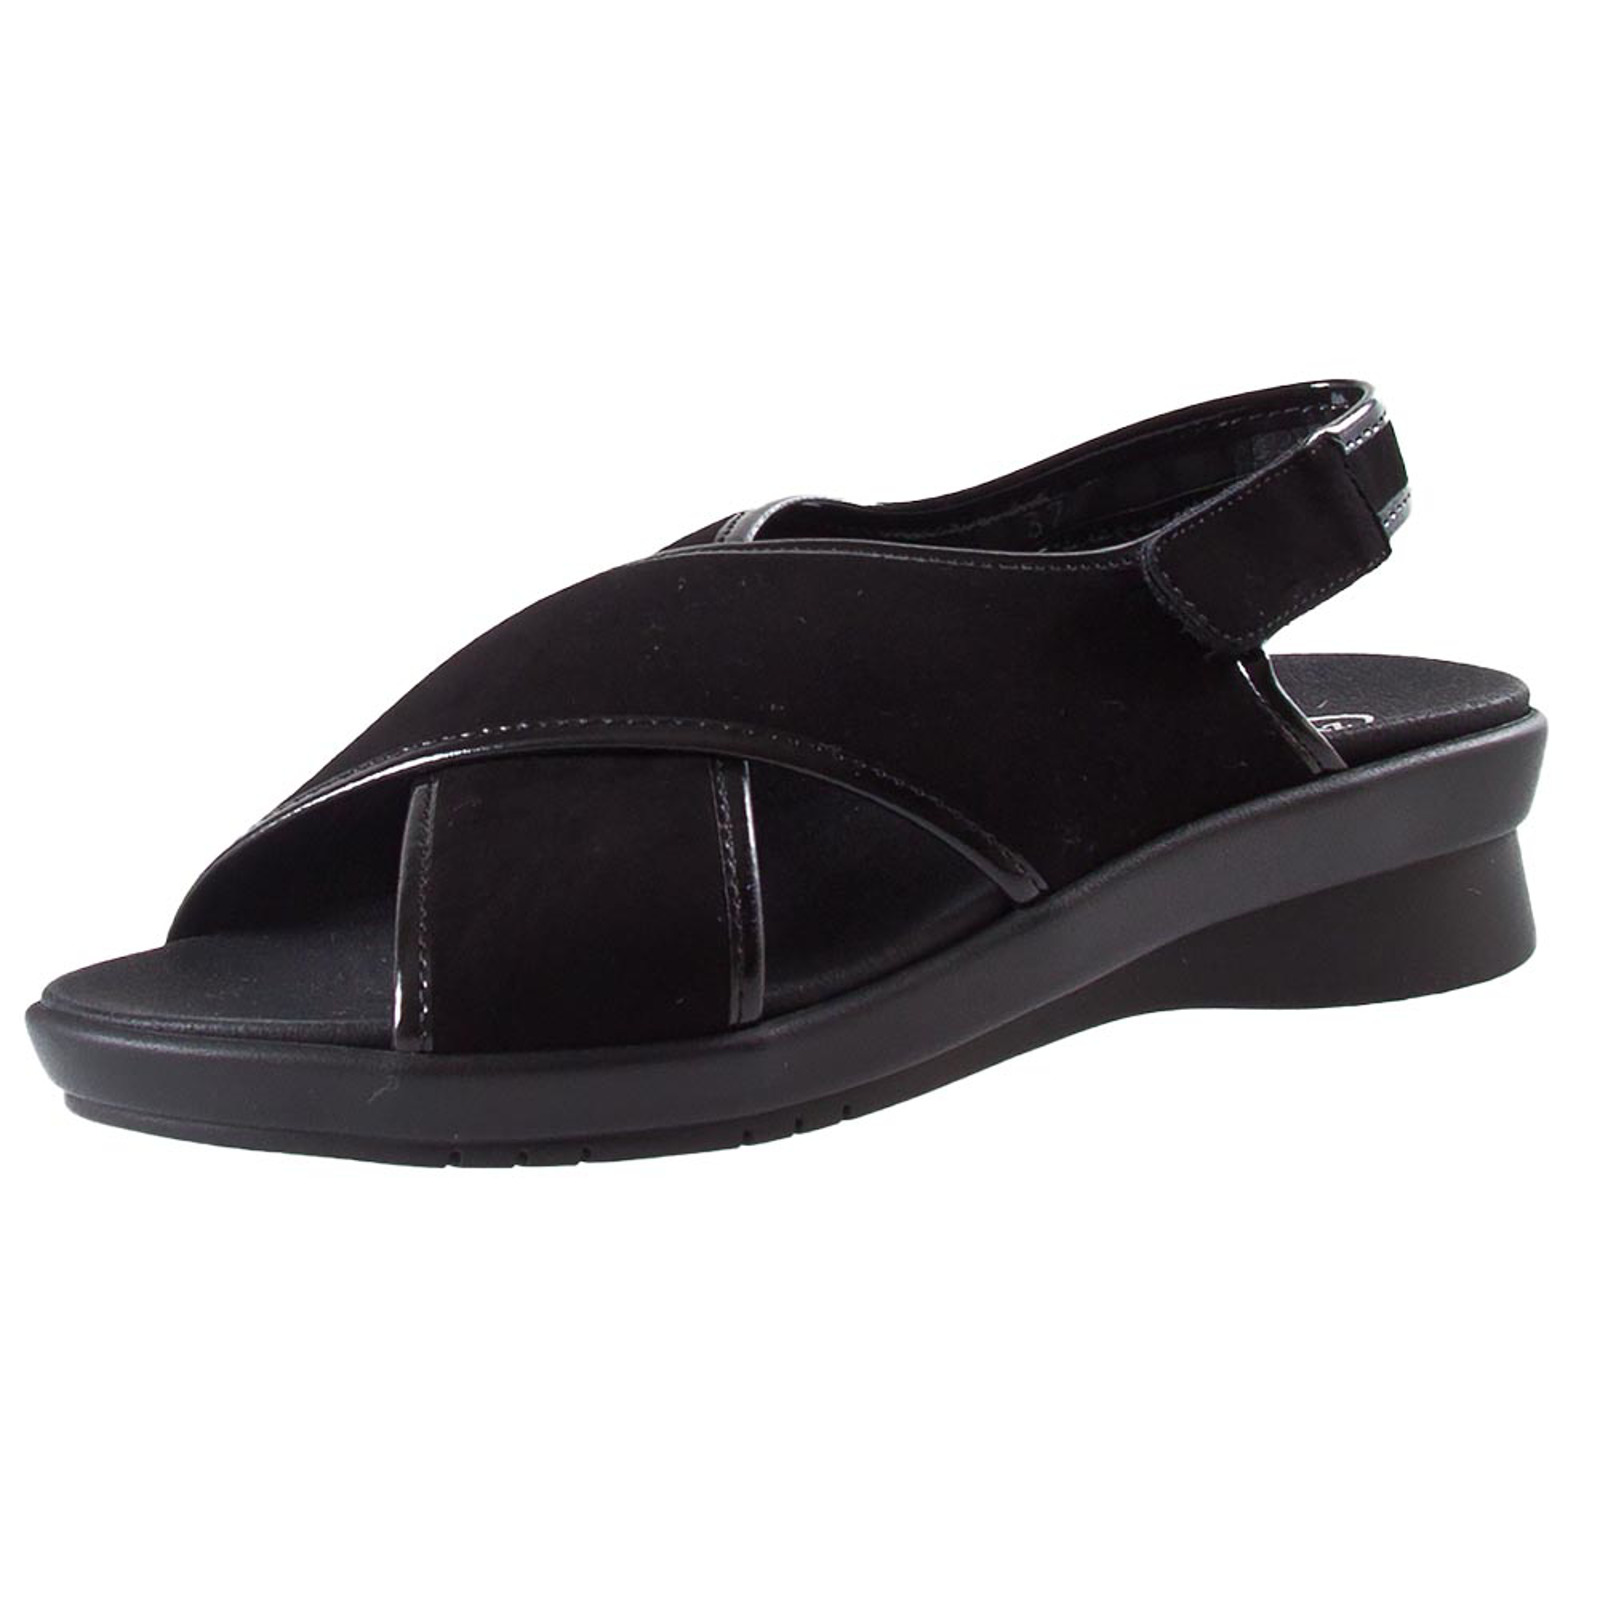 Inademen Horizontaal Pessimistisch Stijlvolle sandaal met uitneembaar voetbed van de Zwartjes Comfort lijn